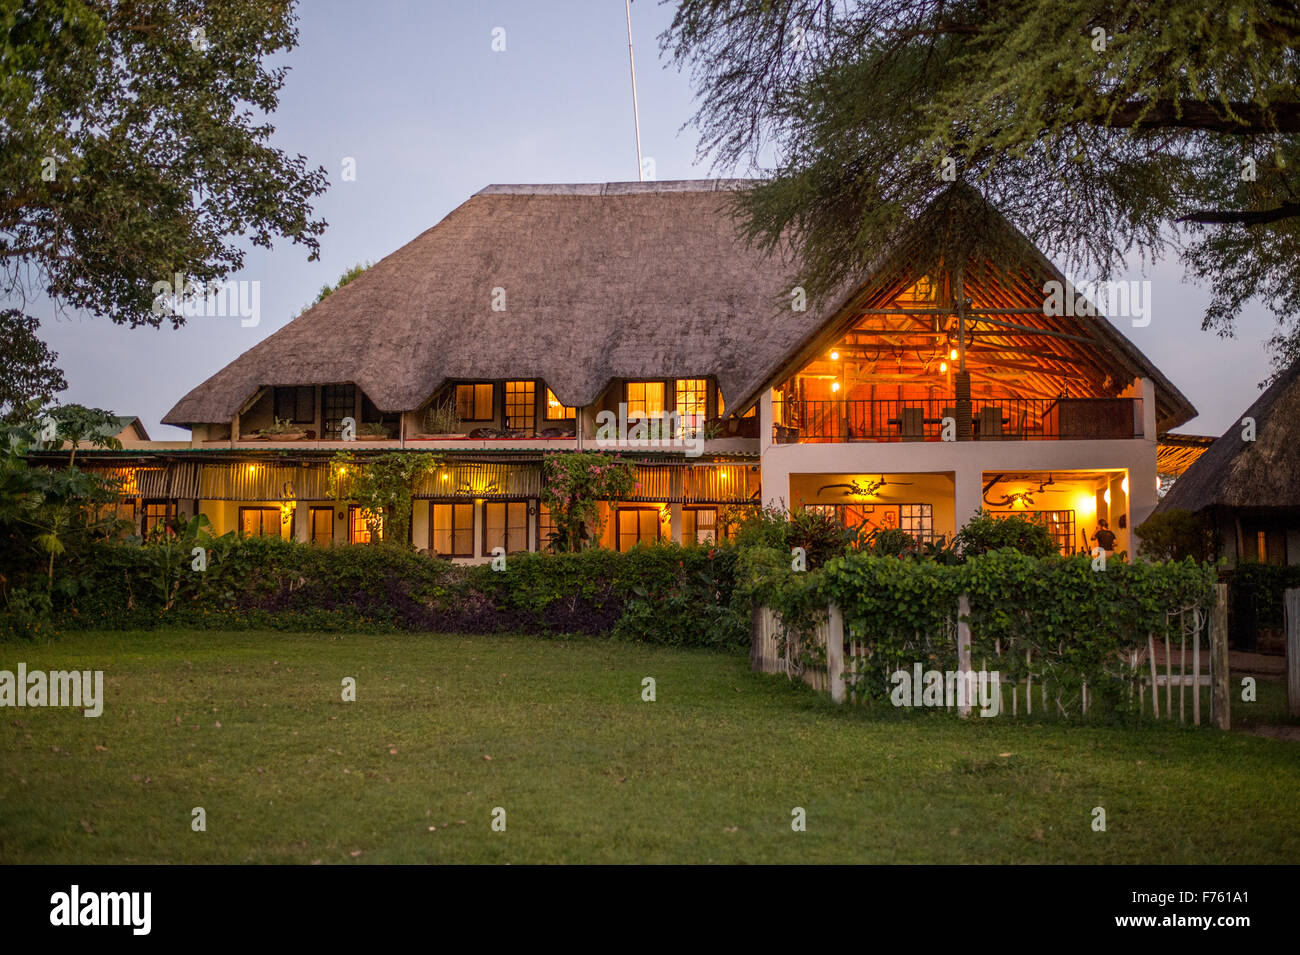 Kasane, Botswana - Chobe National Park African Resort Lodge Stock Photo